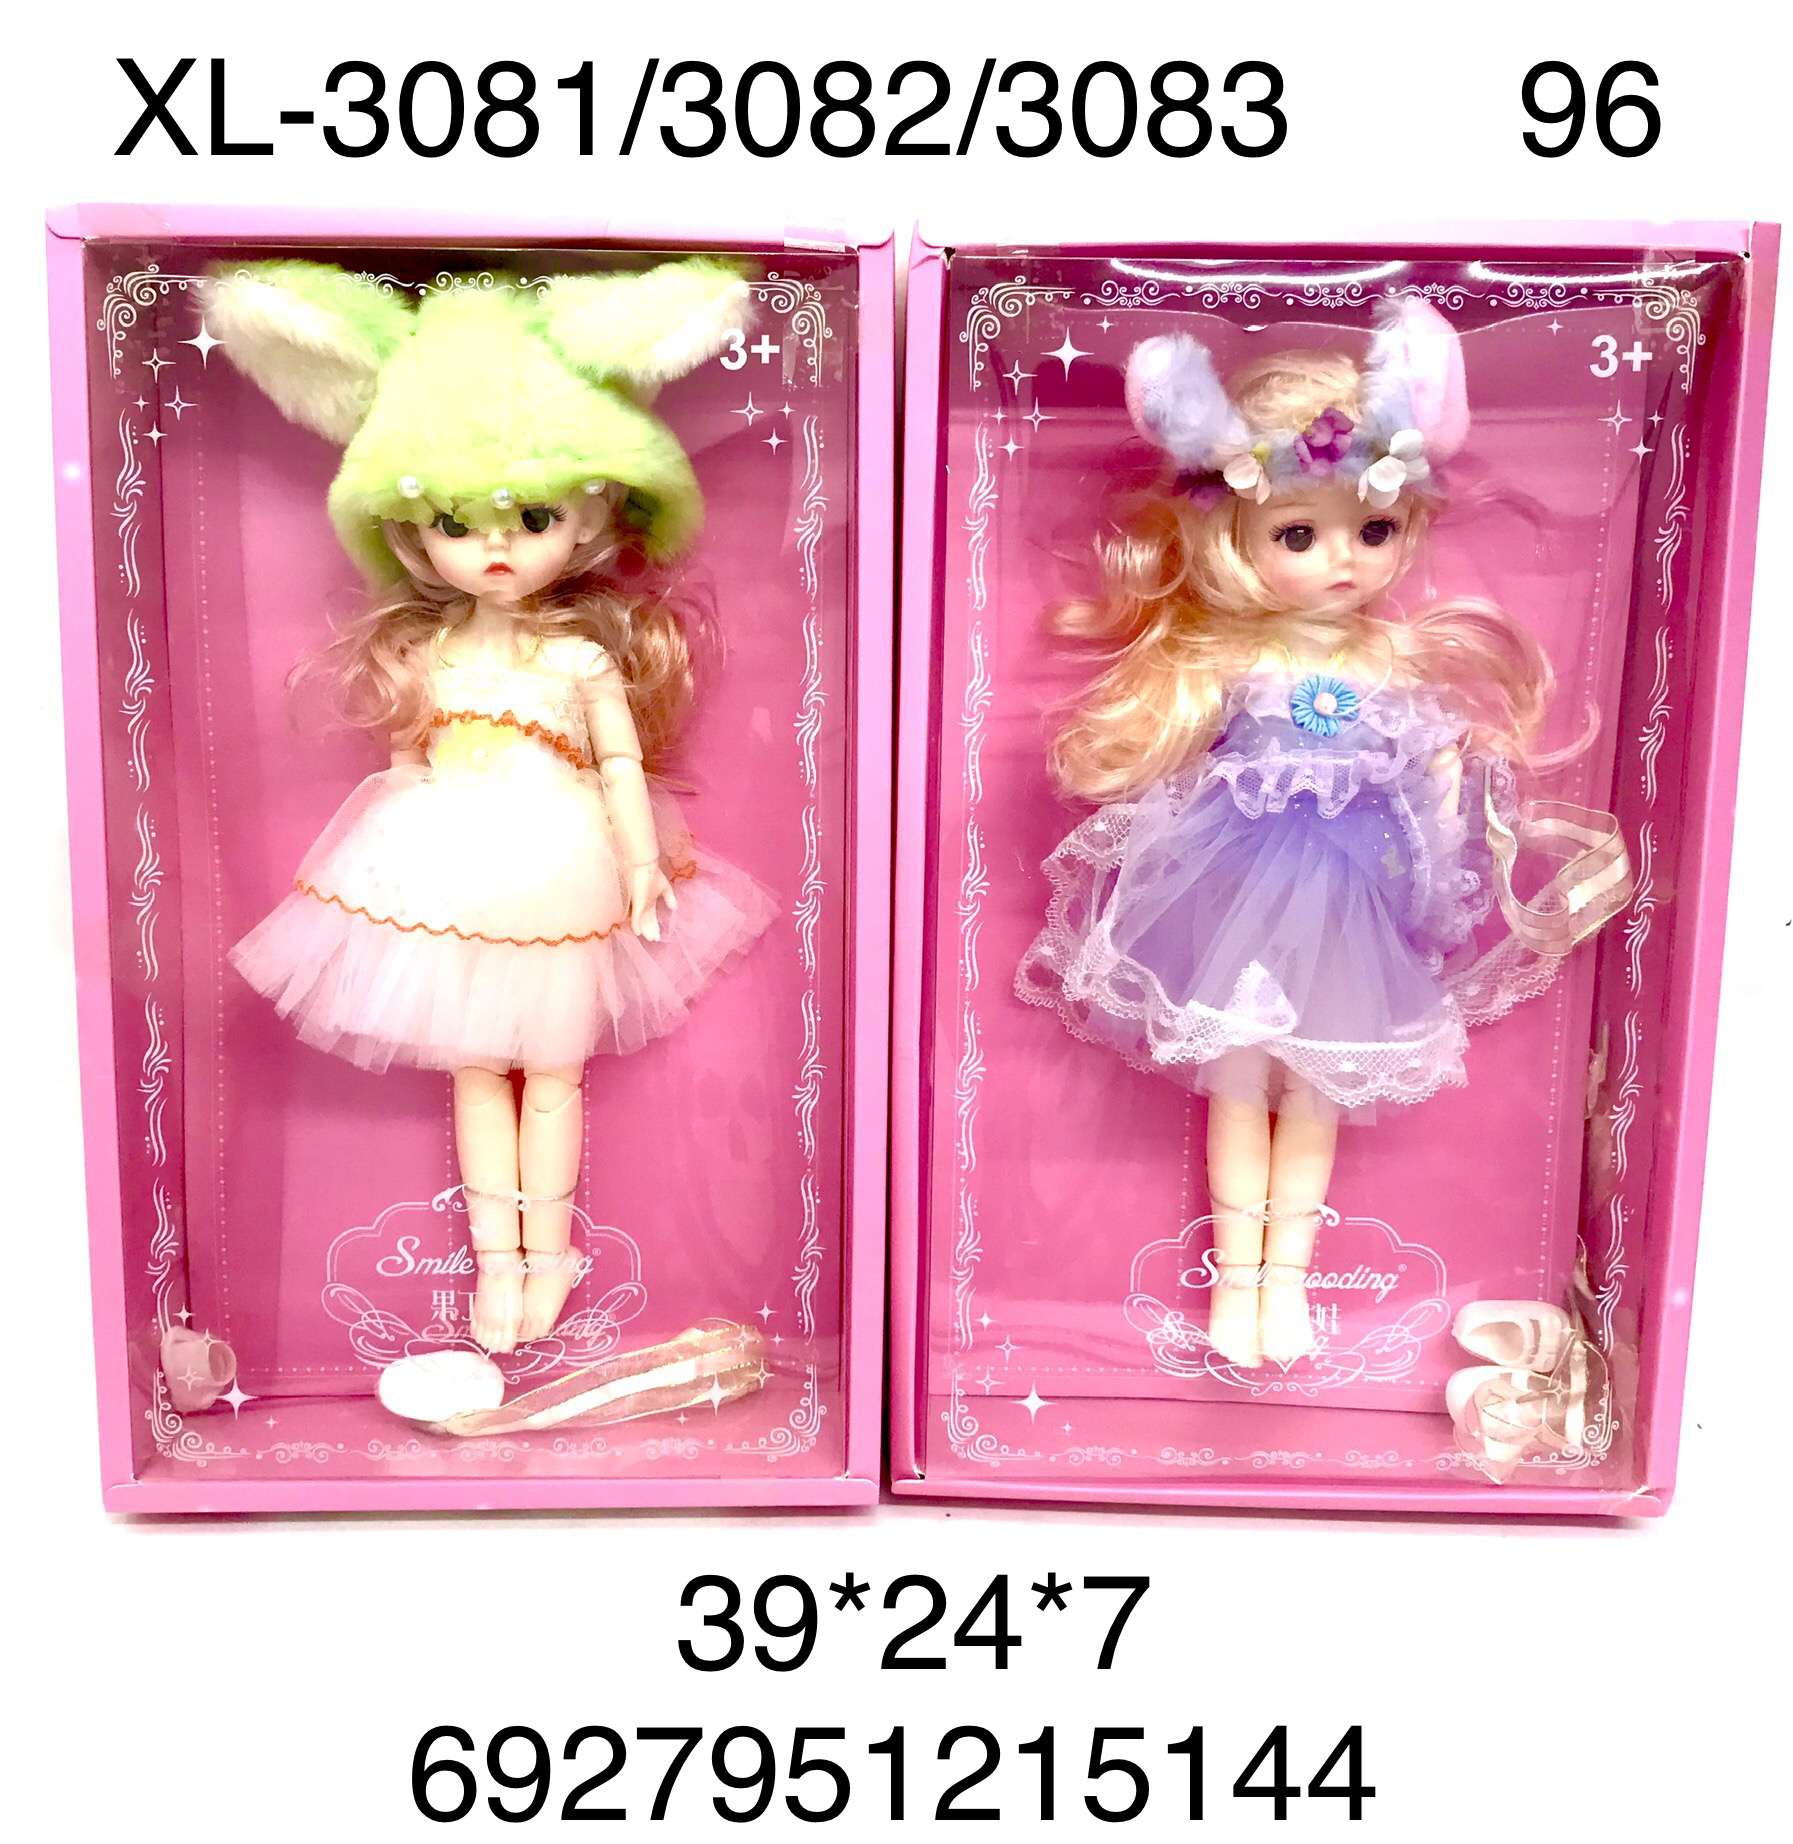 Кукла XL-3081/3082/3083 Smile в ассортименте - Челябинск 